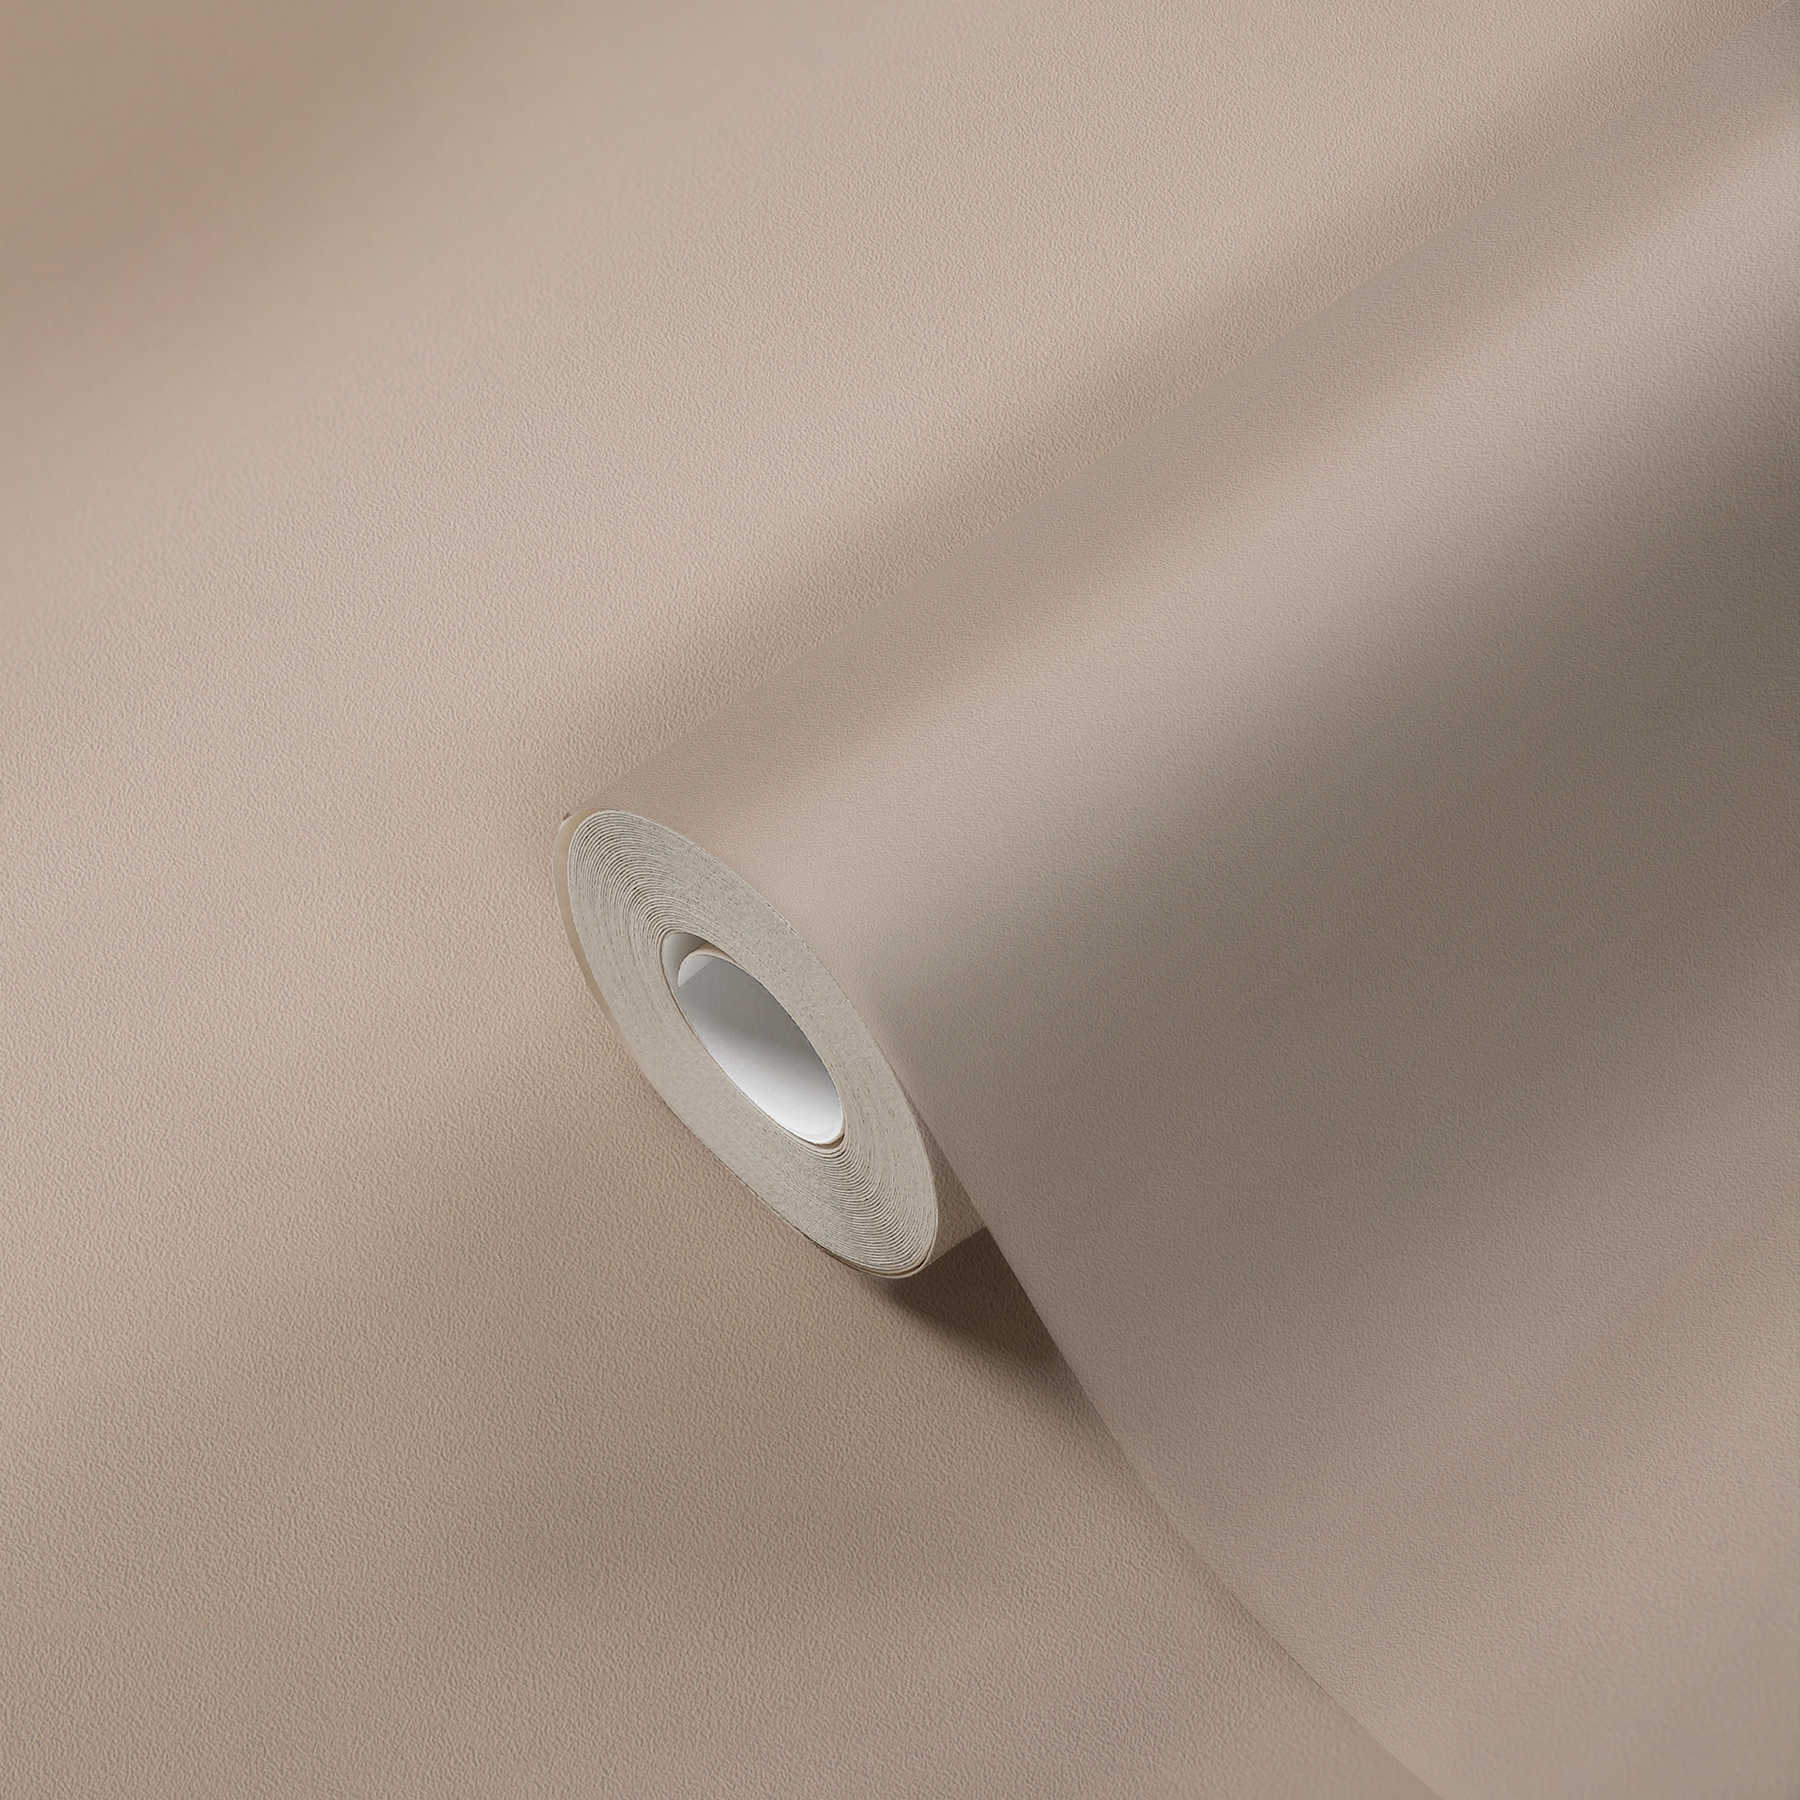             Premium papier peint aspect textile uni & mat - beige
        